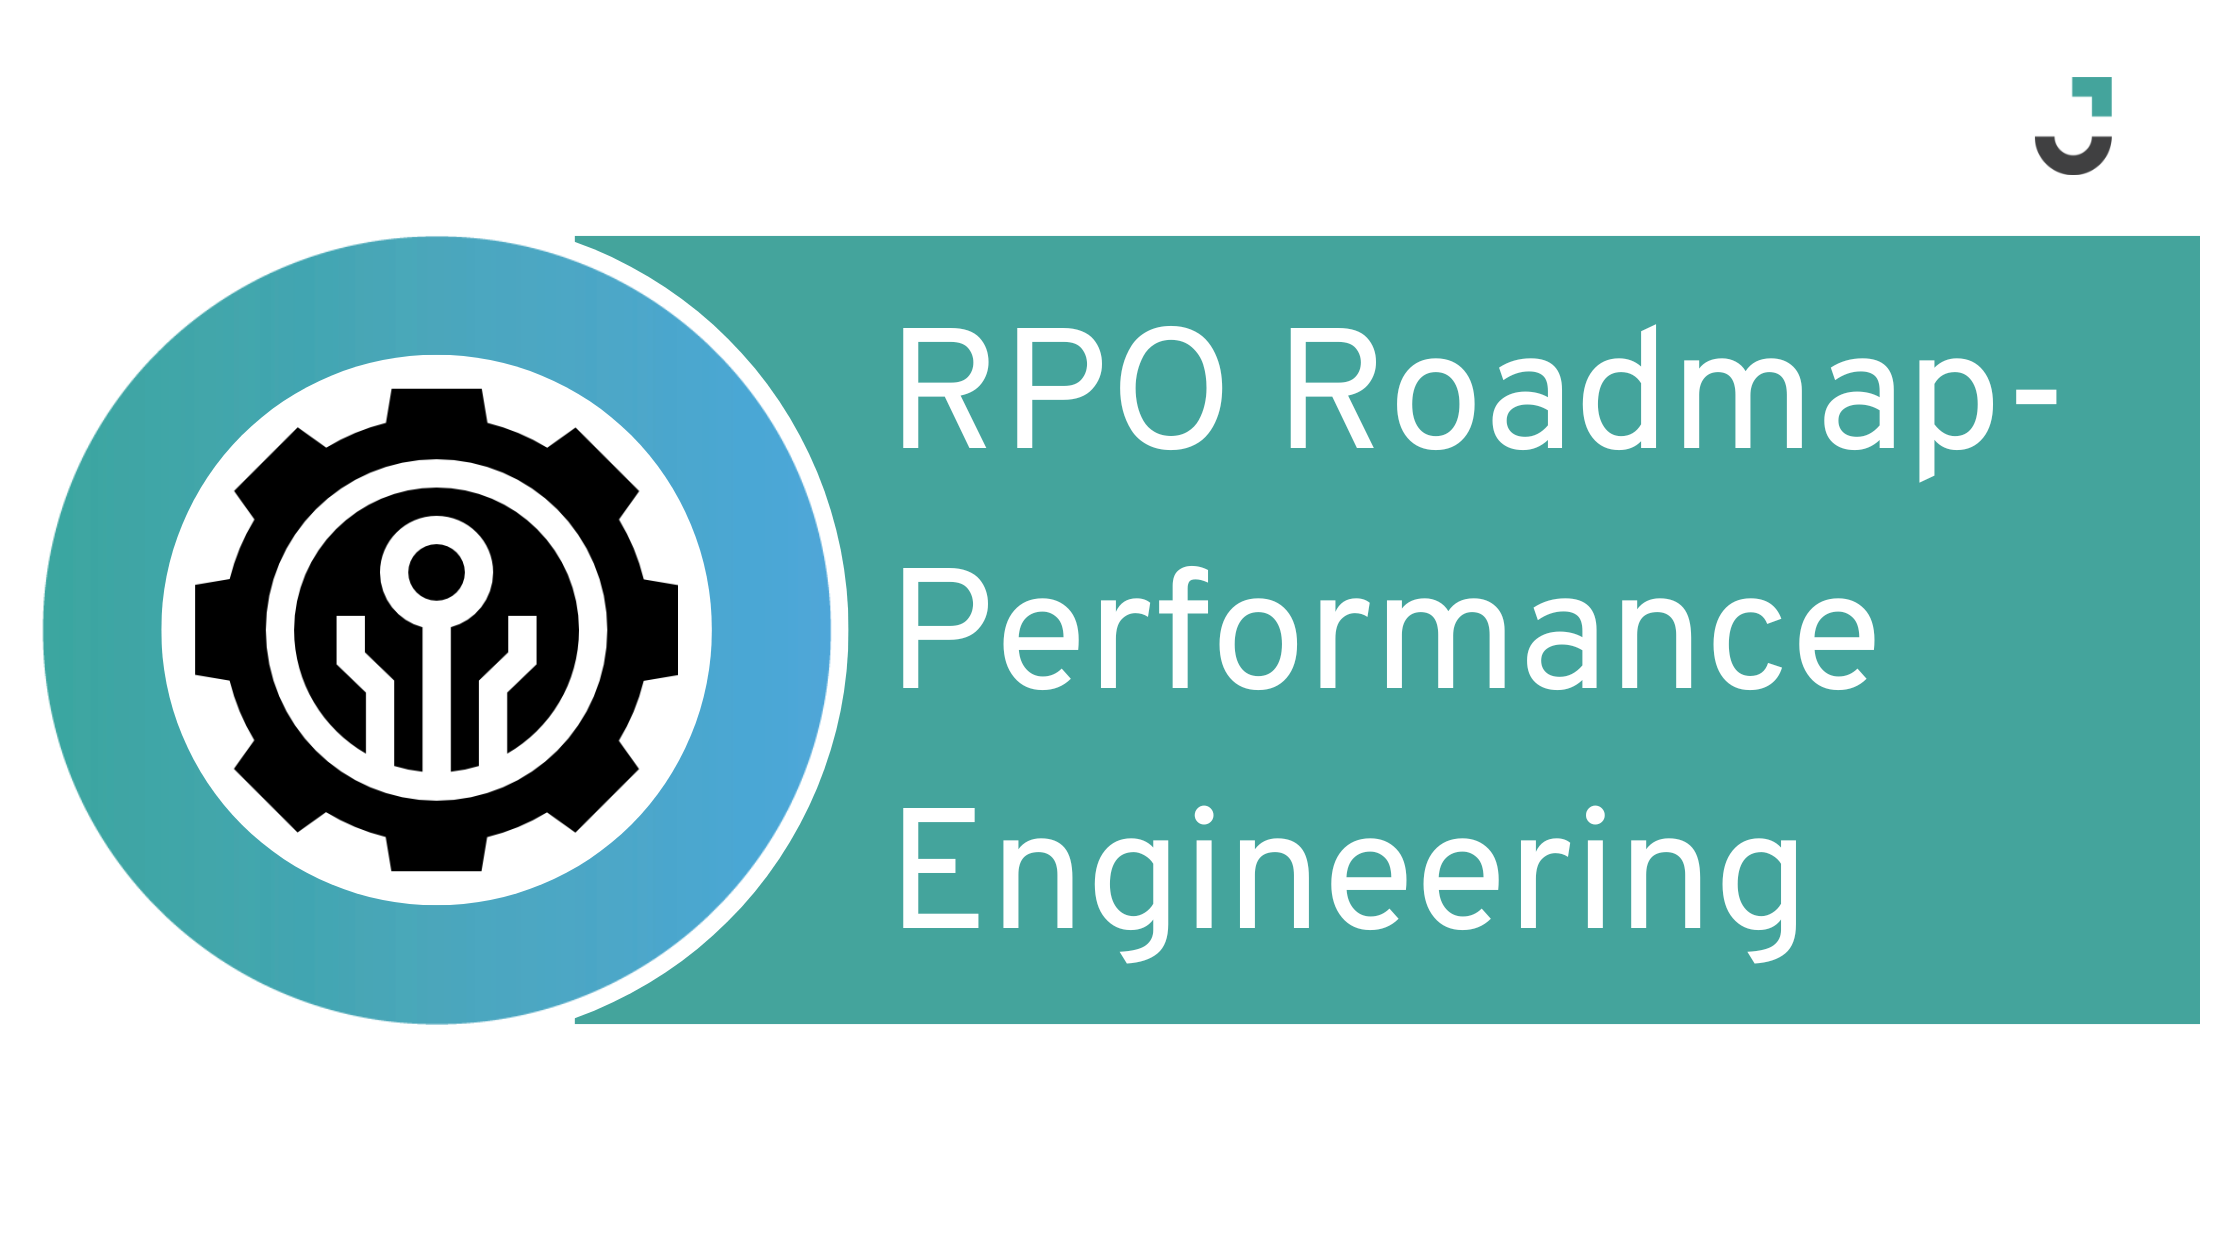 RPO Roadmap- Performance Engineering